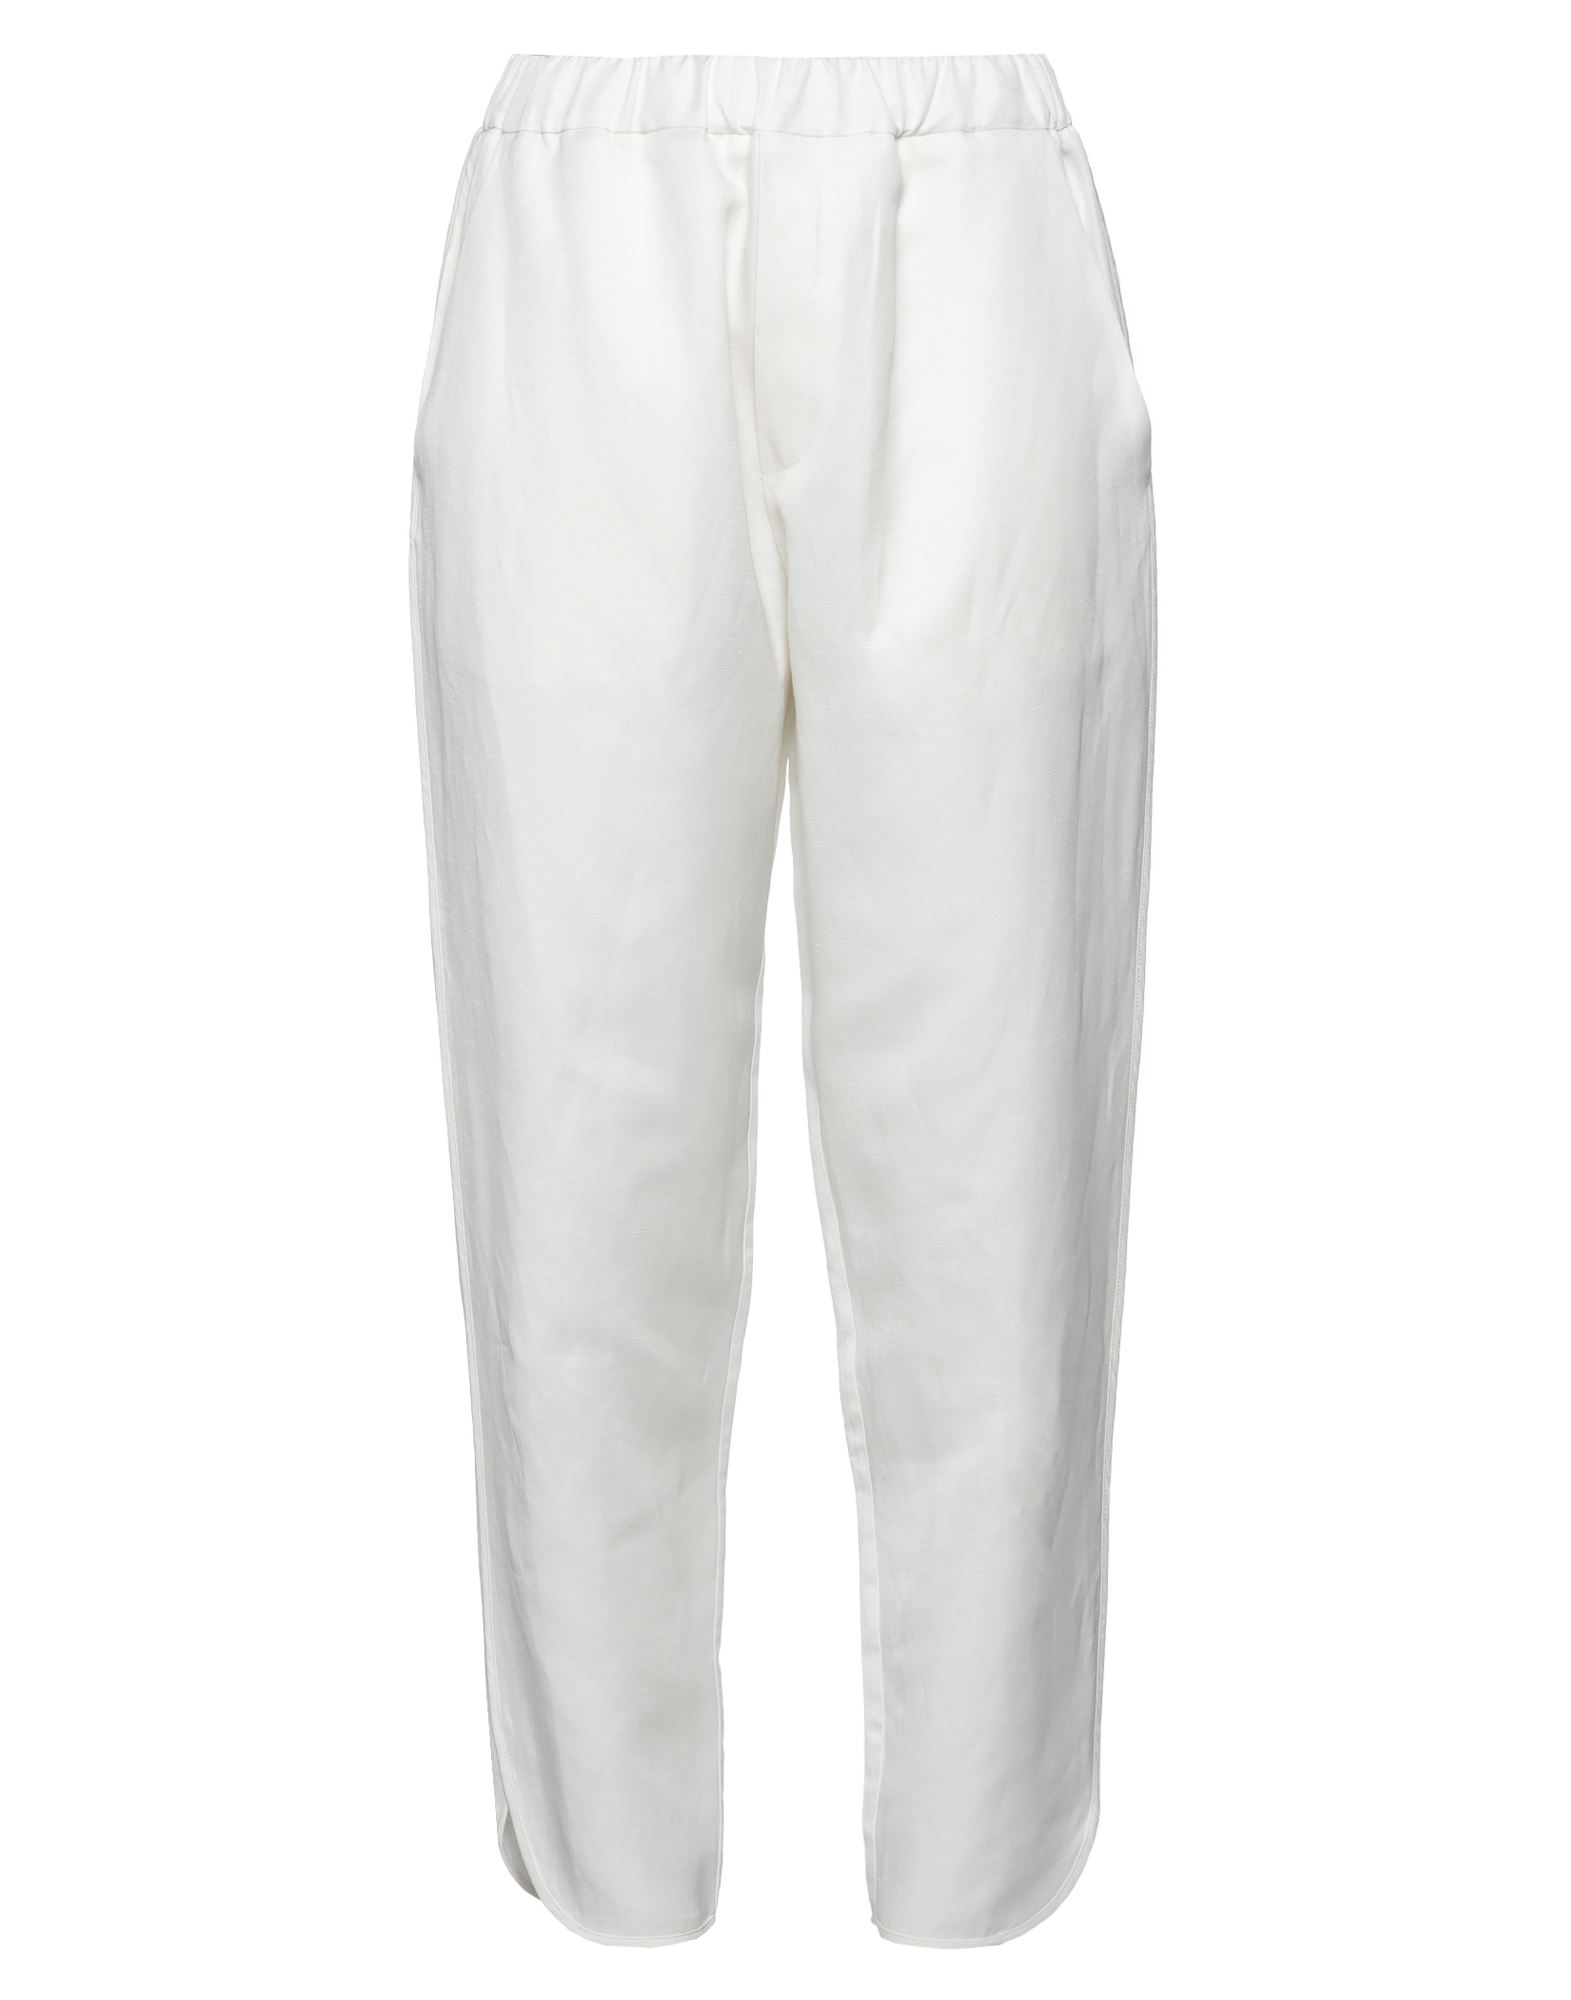 Meimeij Cropped Pants In White